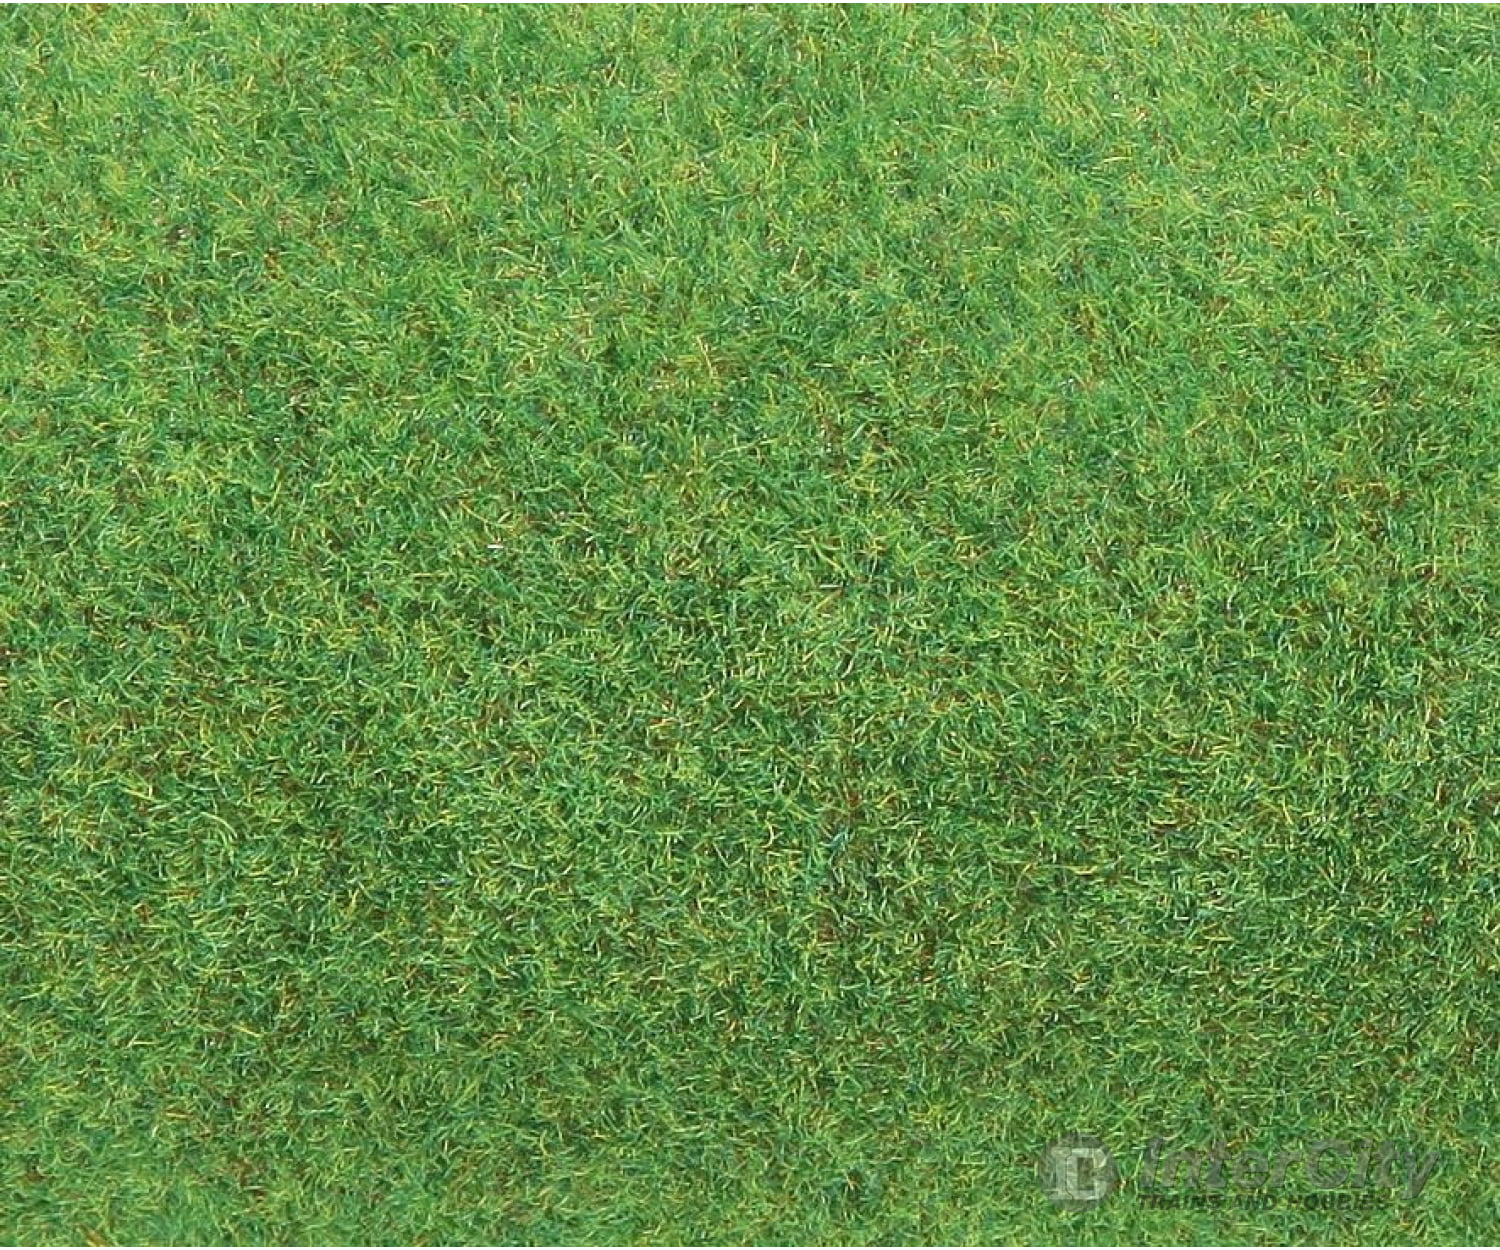 Faller 180754 Ho Tt N Z Ground Mat Light Green Grass & Scenery Mats